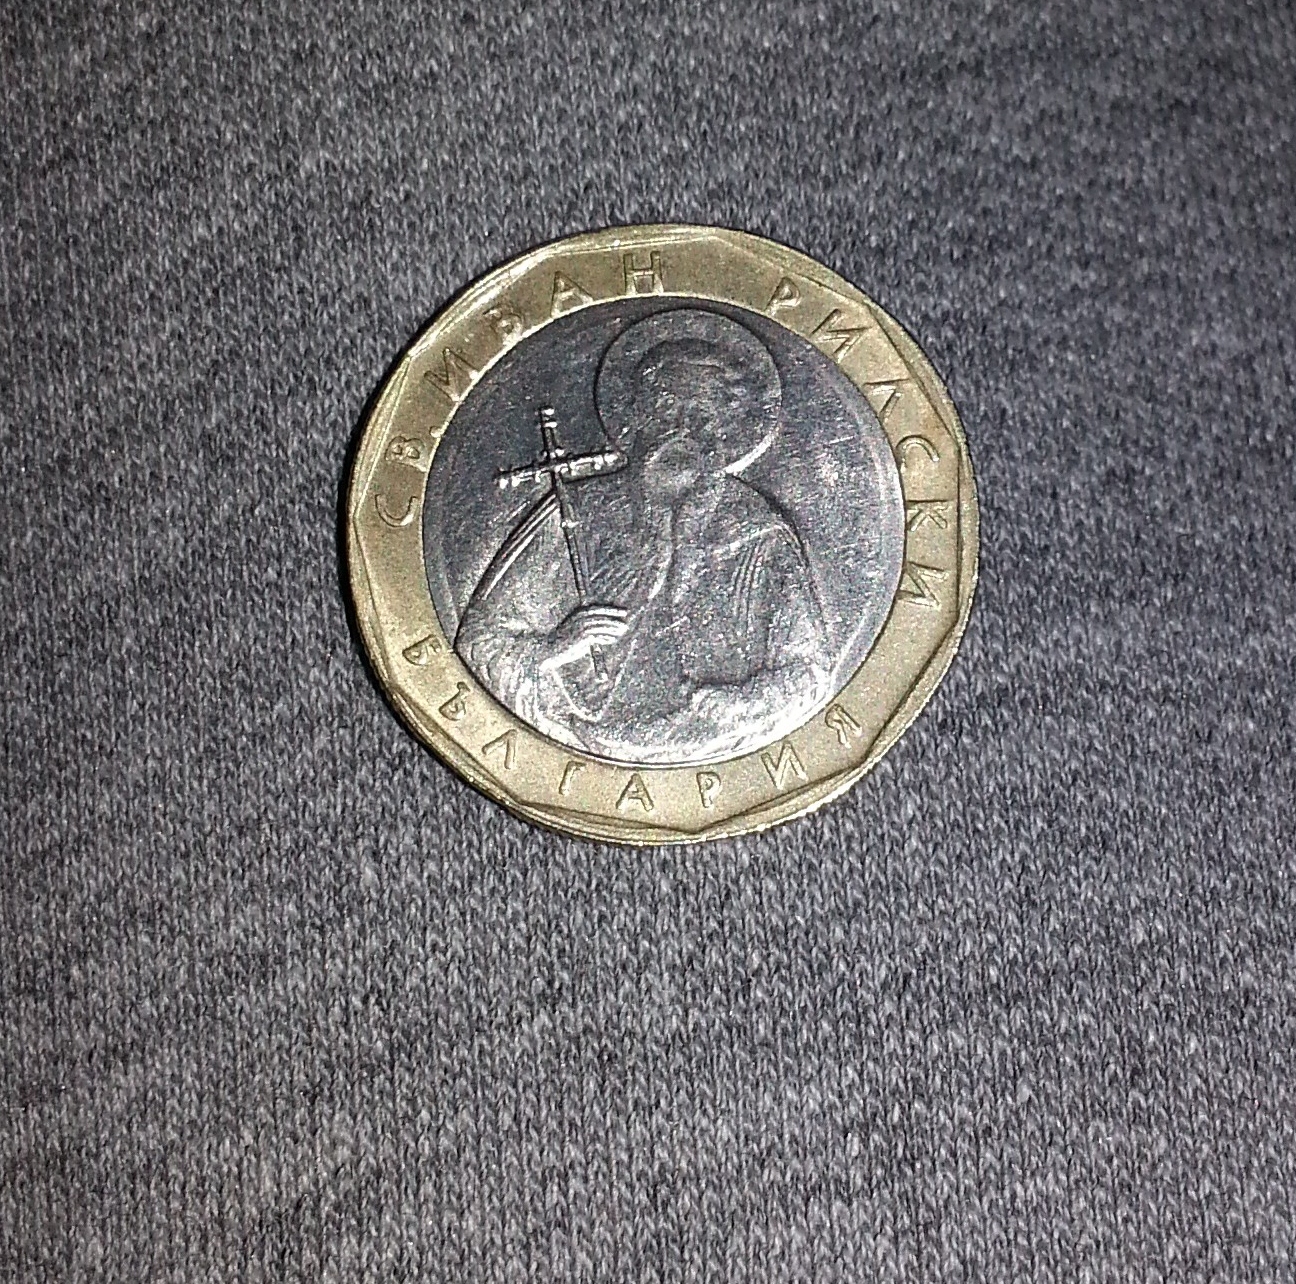 Frage zu einem 1 Euro - Herkunft? (Geld, Münzen)